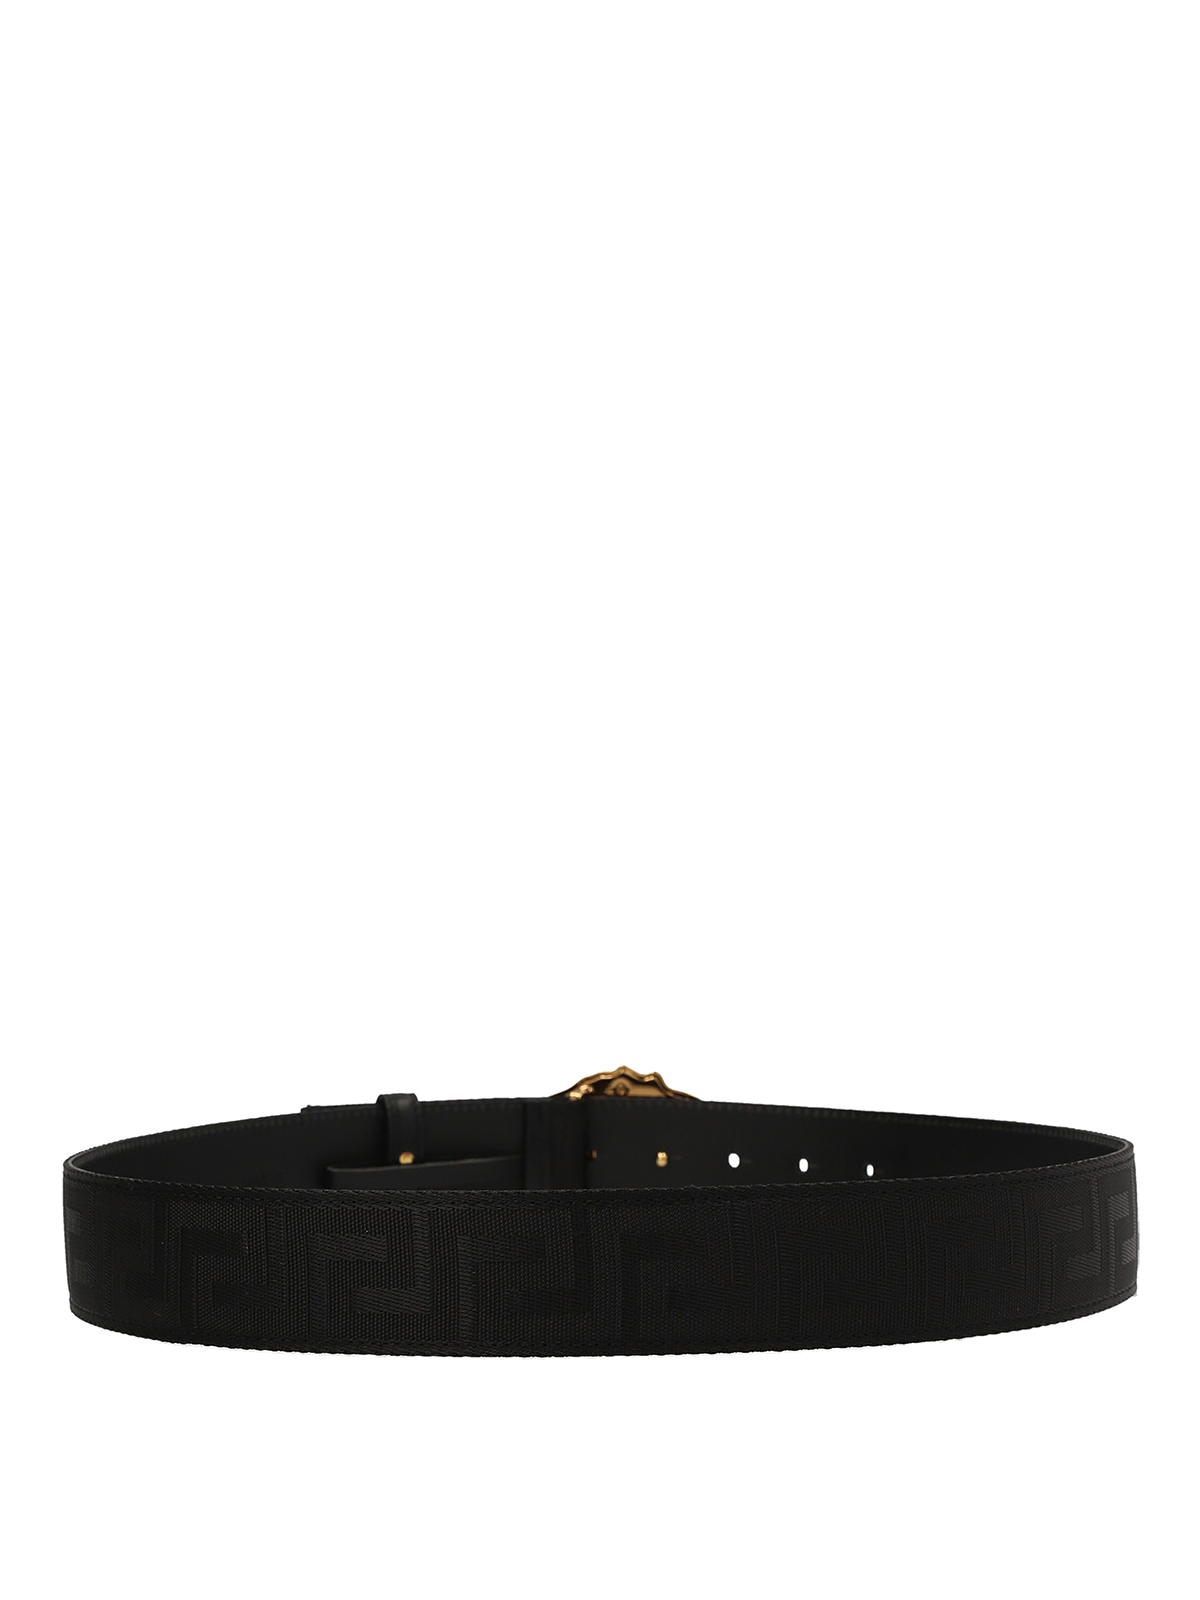 Belts Versace - Greca belt - DCU8061DNAS621B00V | Shop online at THEBS